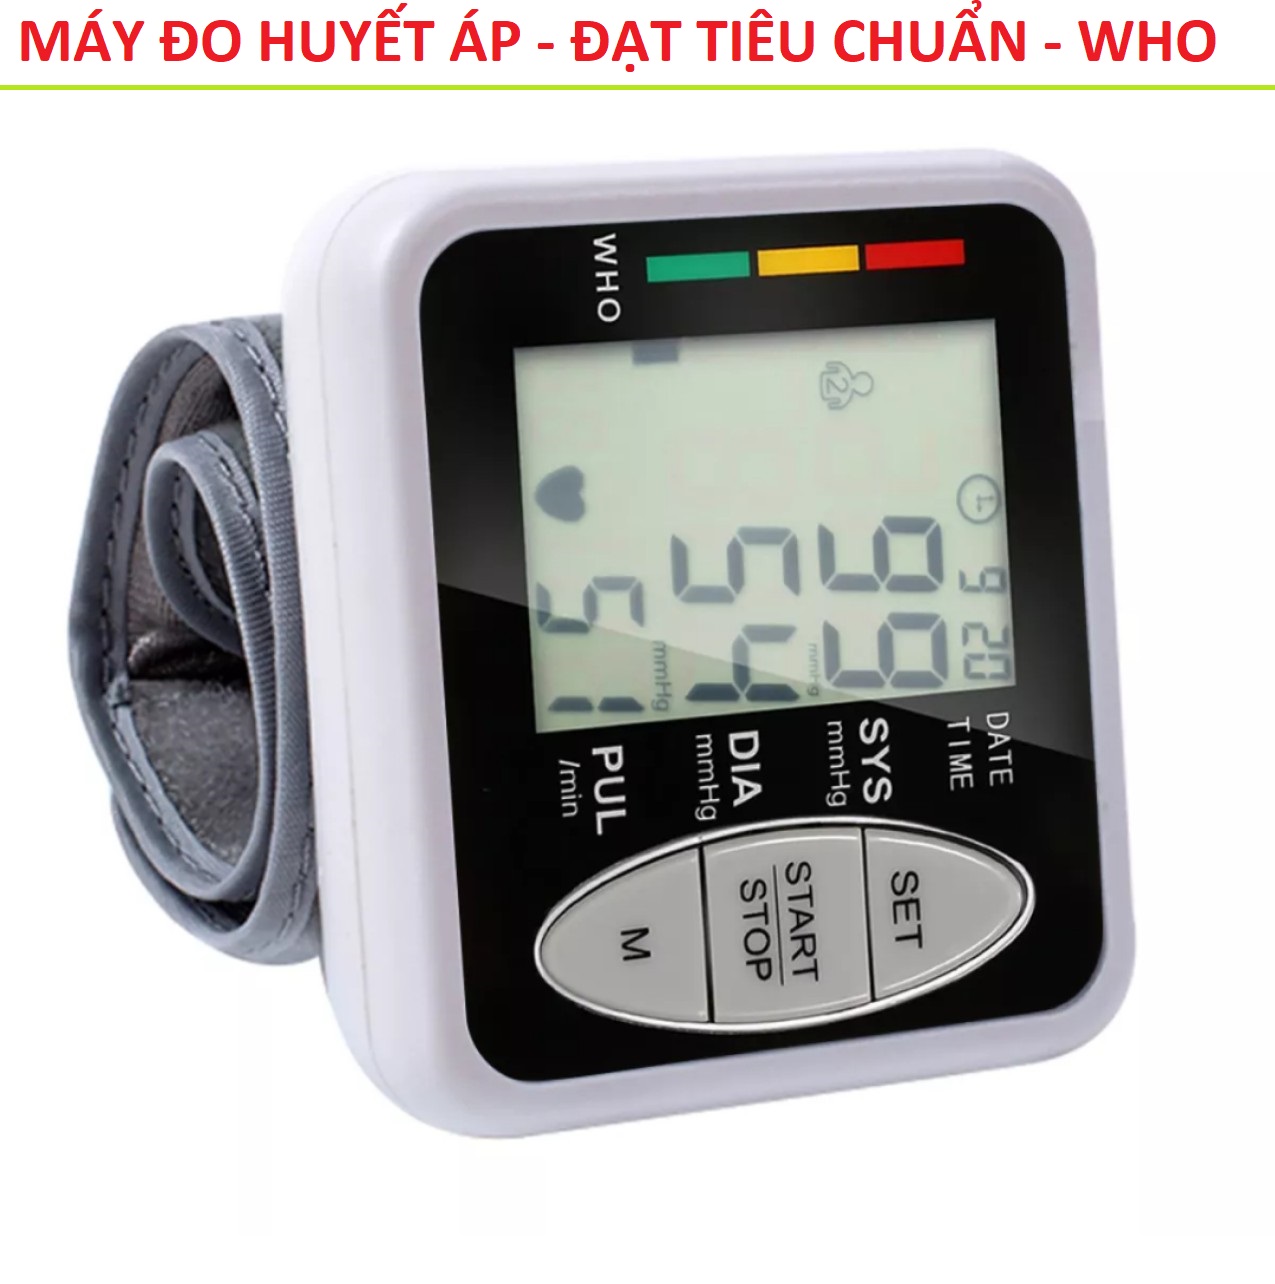 Máy đo huyết áp nhịp tim cổ tay điện tử màn hình led mẫu mới đo tex nhanh đạt Tiêu chuẩn WHO